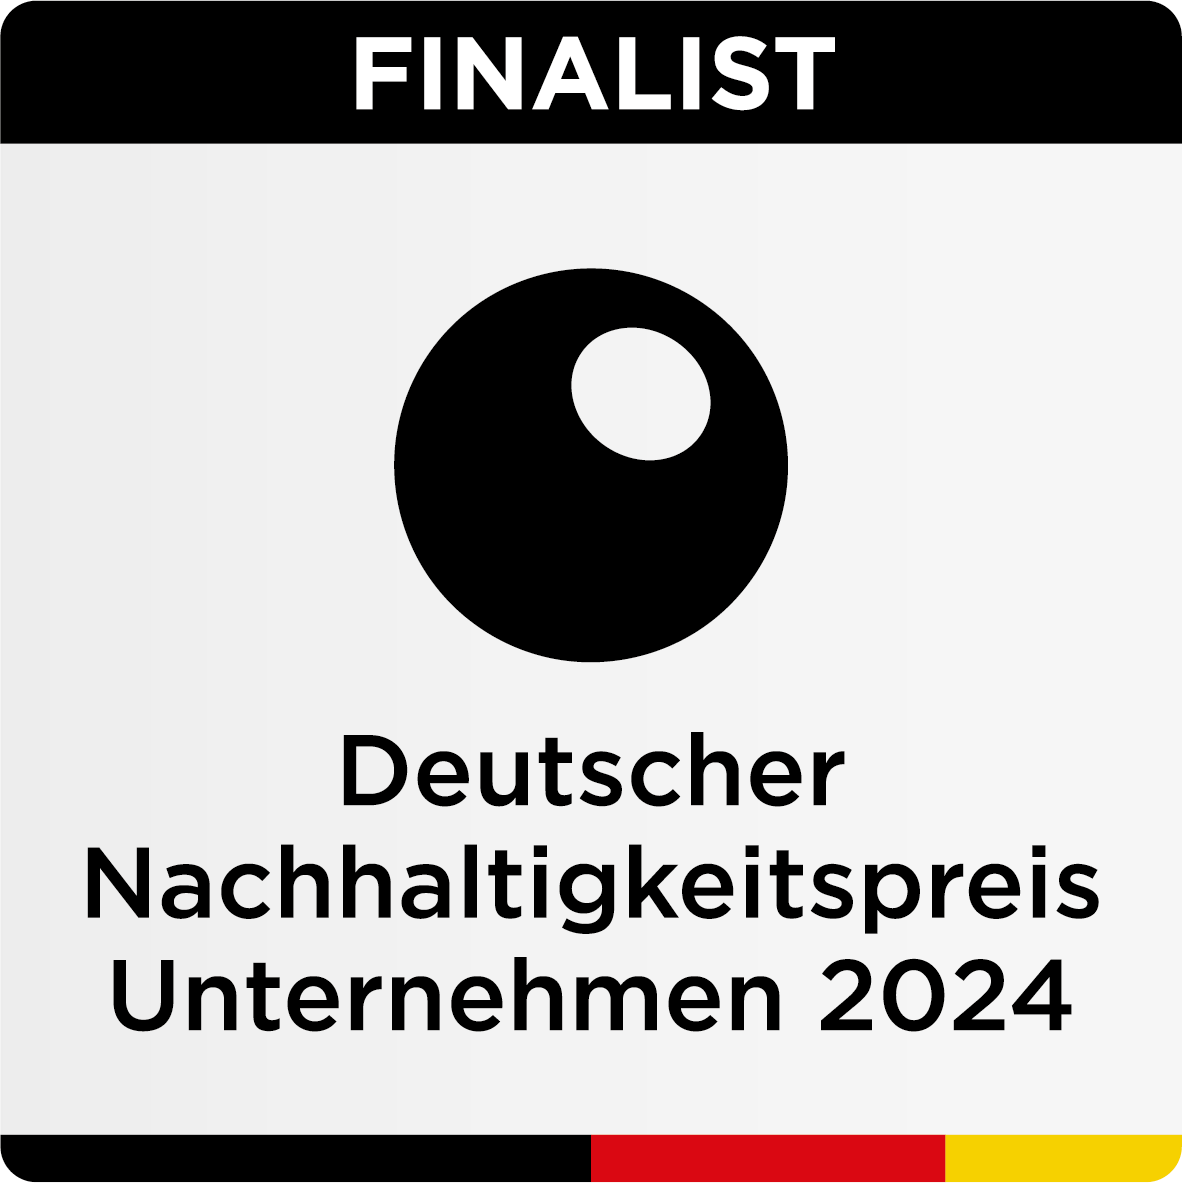  Finalist Deutscher Nachhaltigkeitspreis Unternehmen 2024 